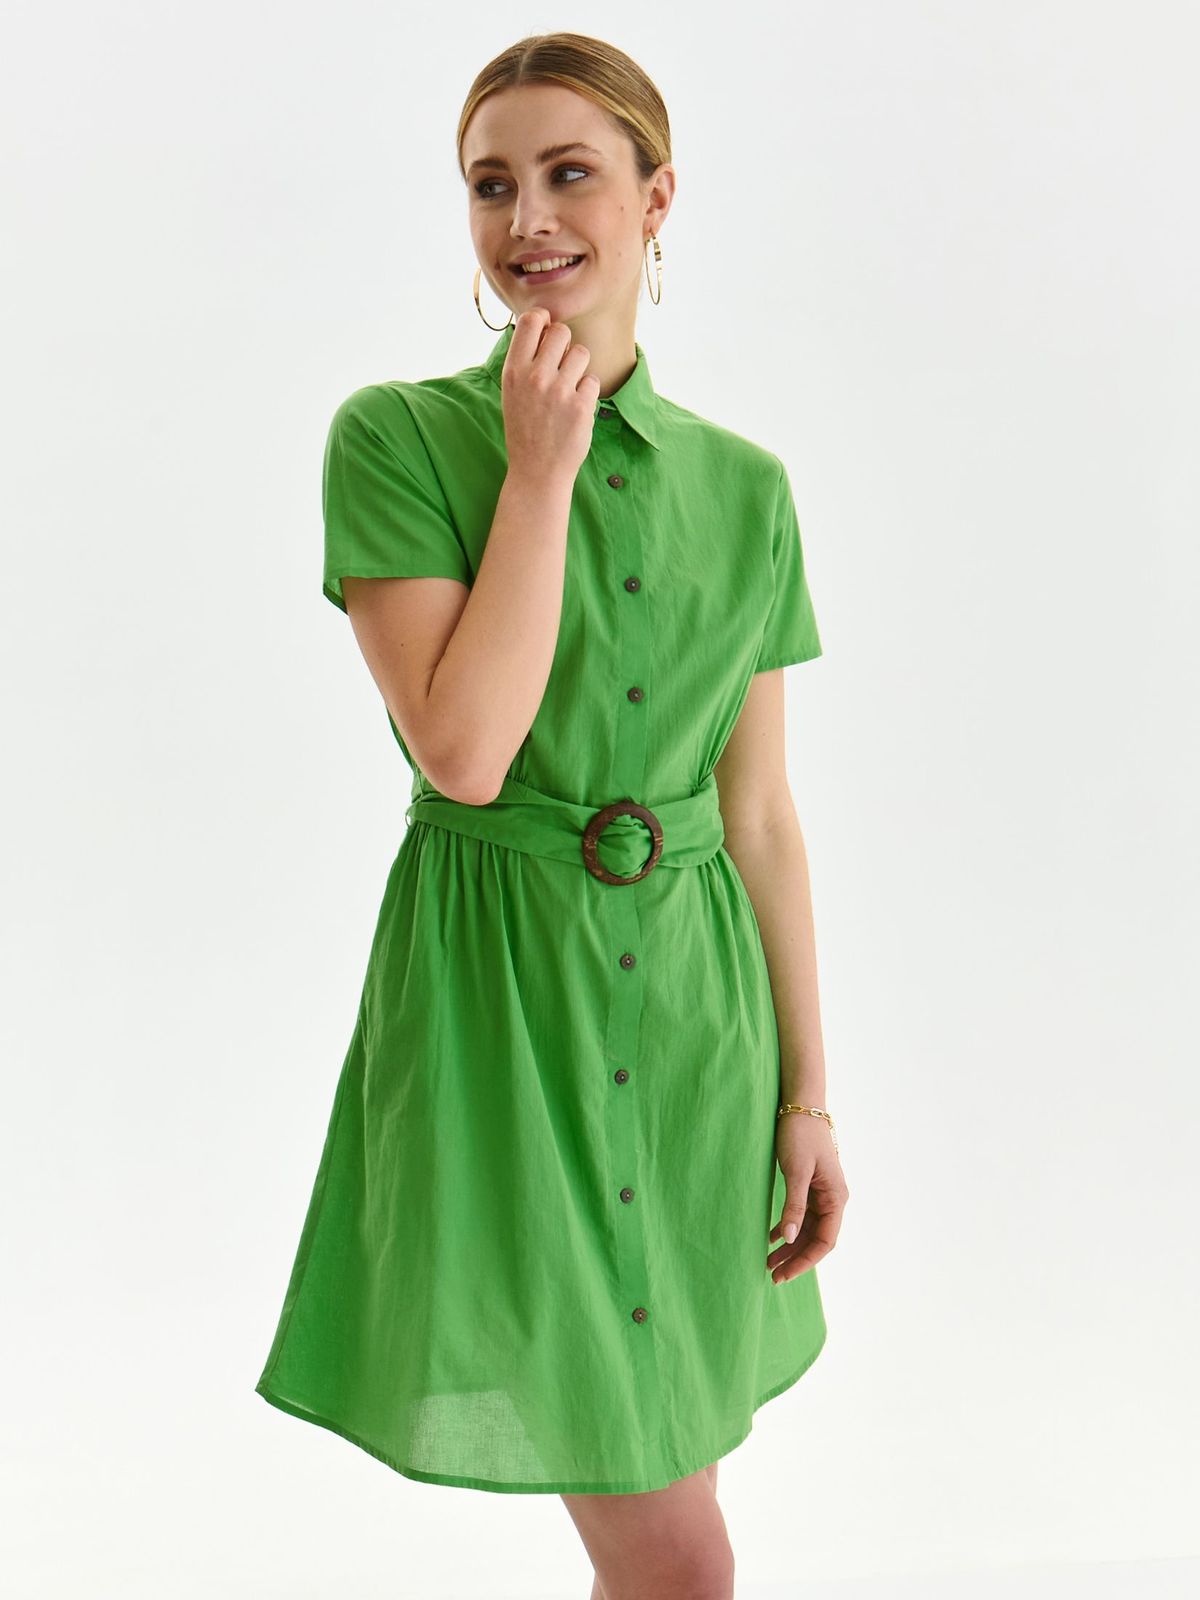 Rochie din bumbac verde scurta cu croi larg si buzunare accesorizata cu cordon - Top Secret